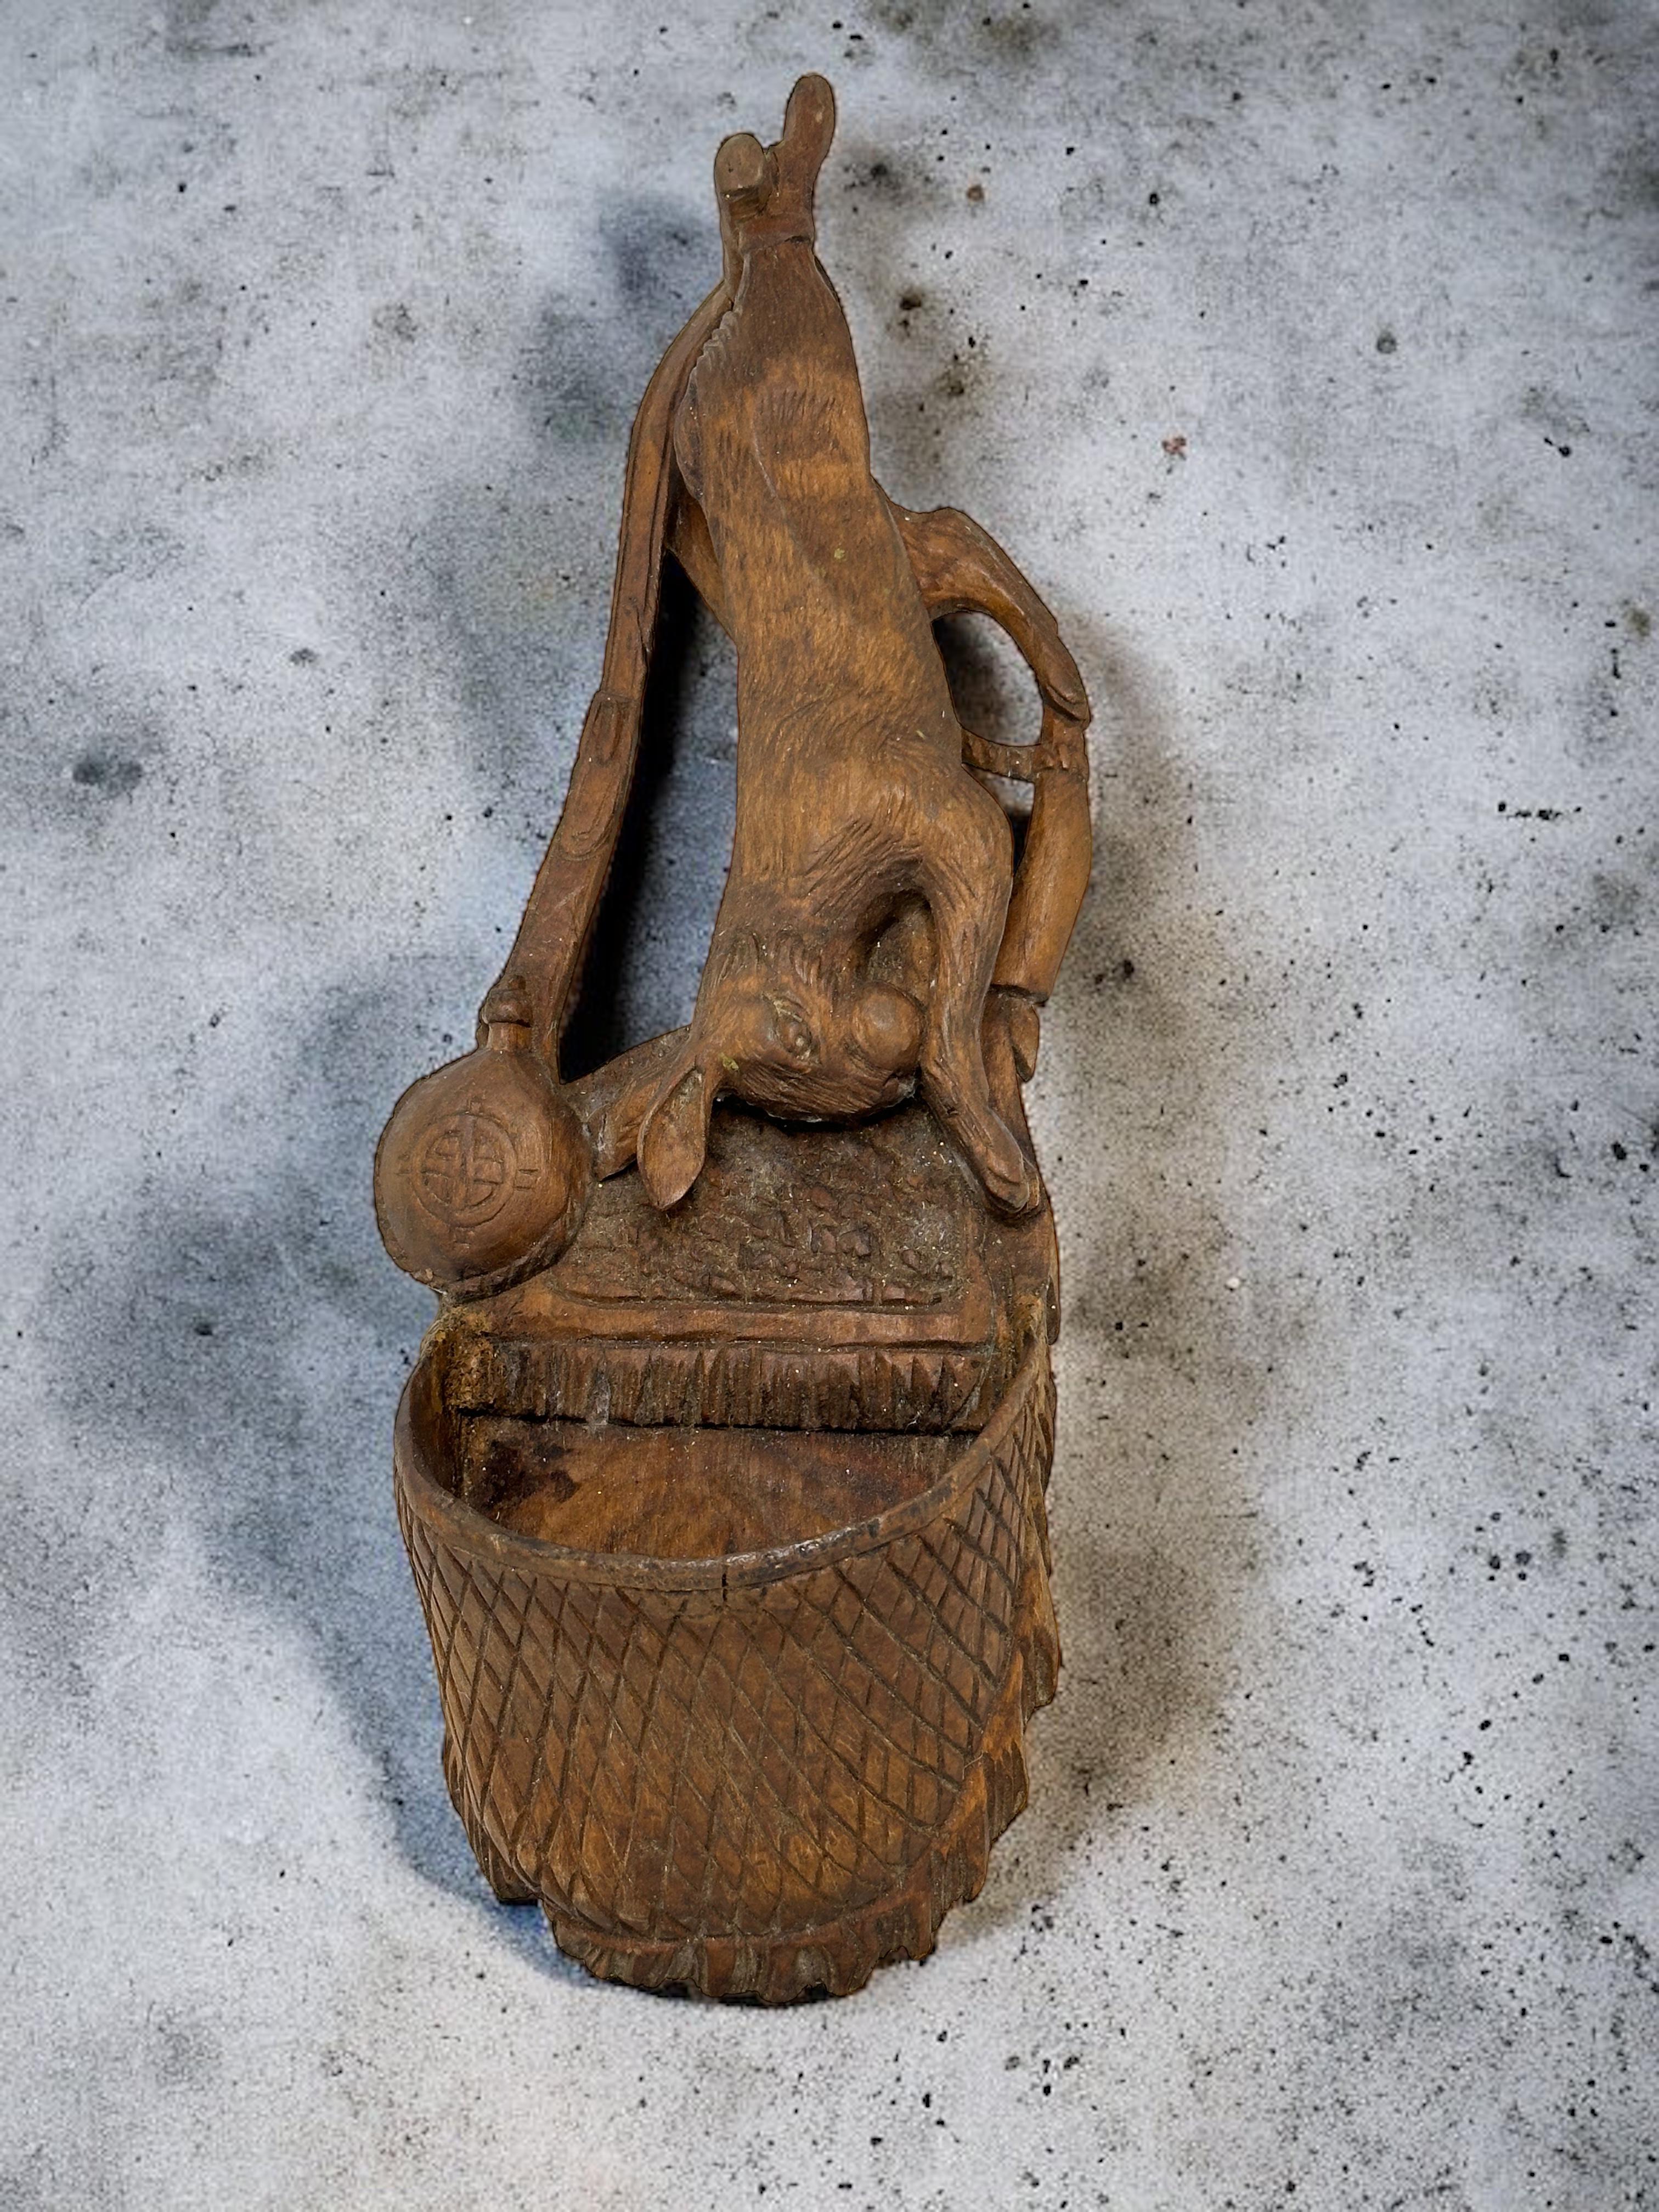 Seltene antike große deutsche Jagdszene aus Metall auf einer hölzernen Wandtrophäe, die einen Hasen, einen Hund und eine Tasche mit einer Sektflasche zeigt.
Wunderbare Trophäe der Jagd für Ihre Black Forest Collection'S. Dies ist ein wirklich